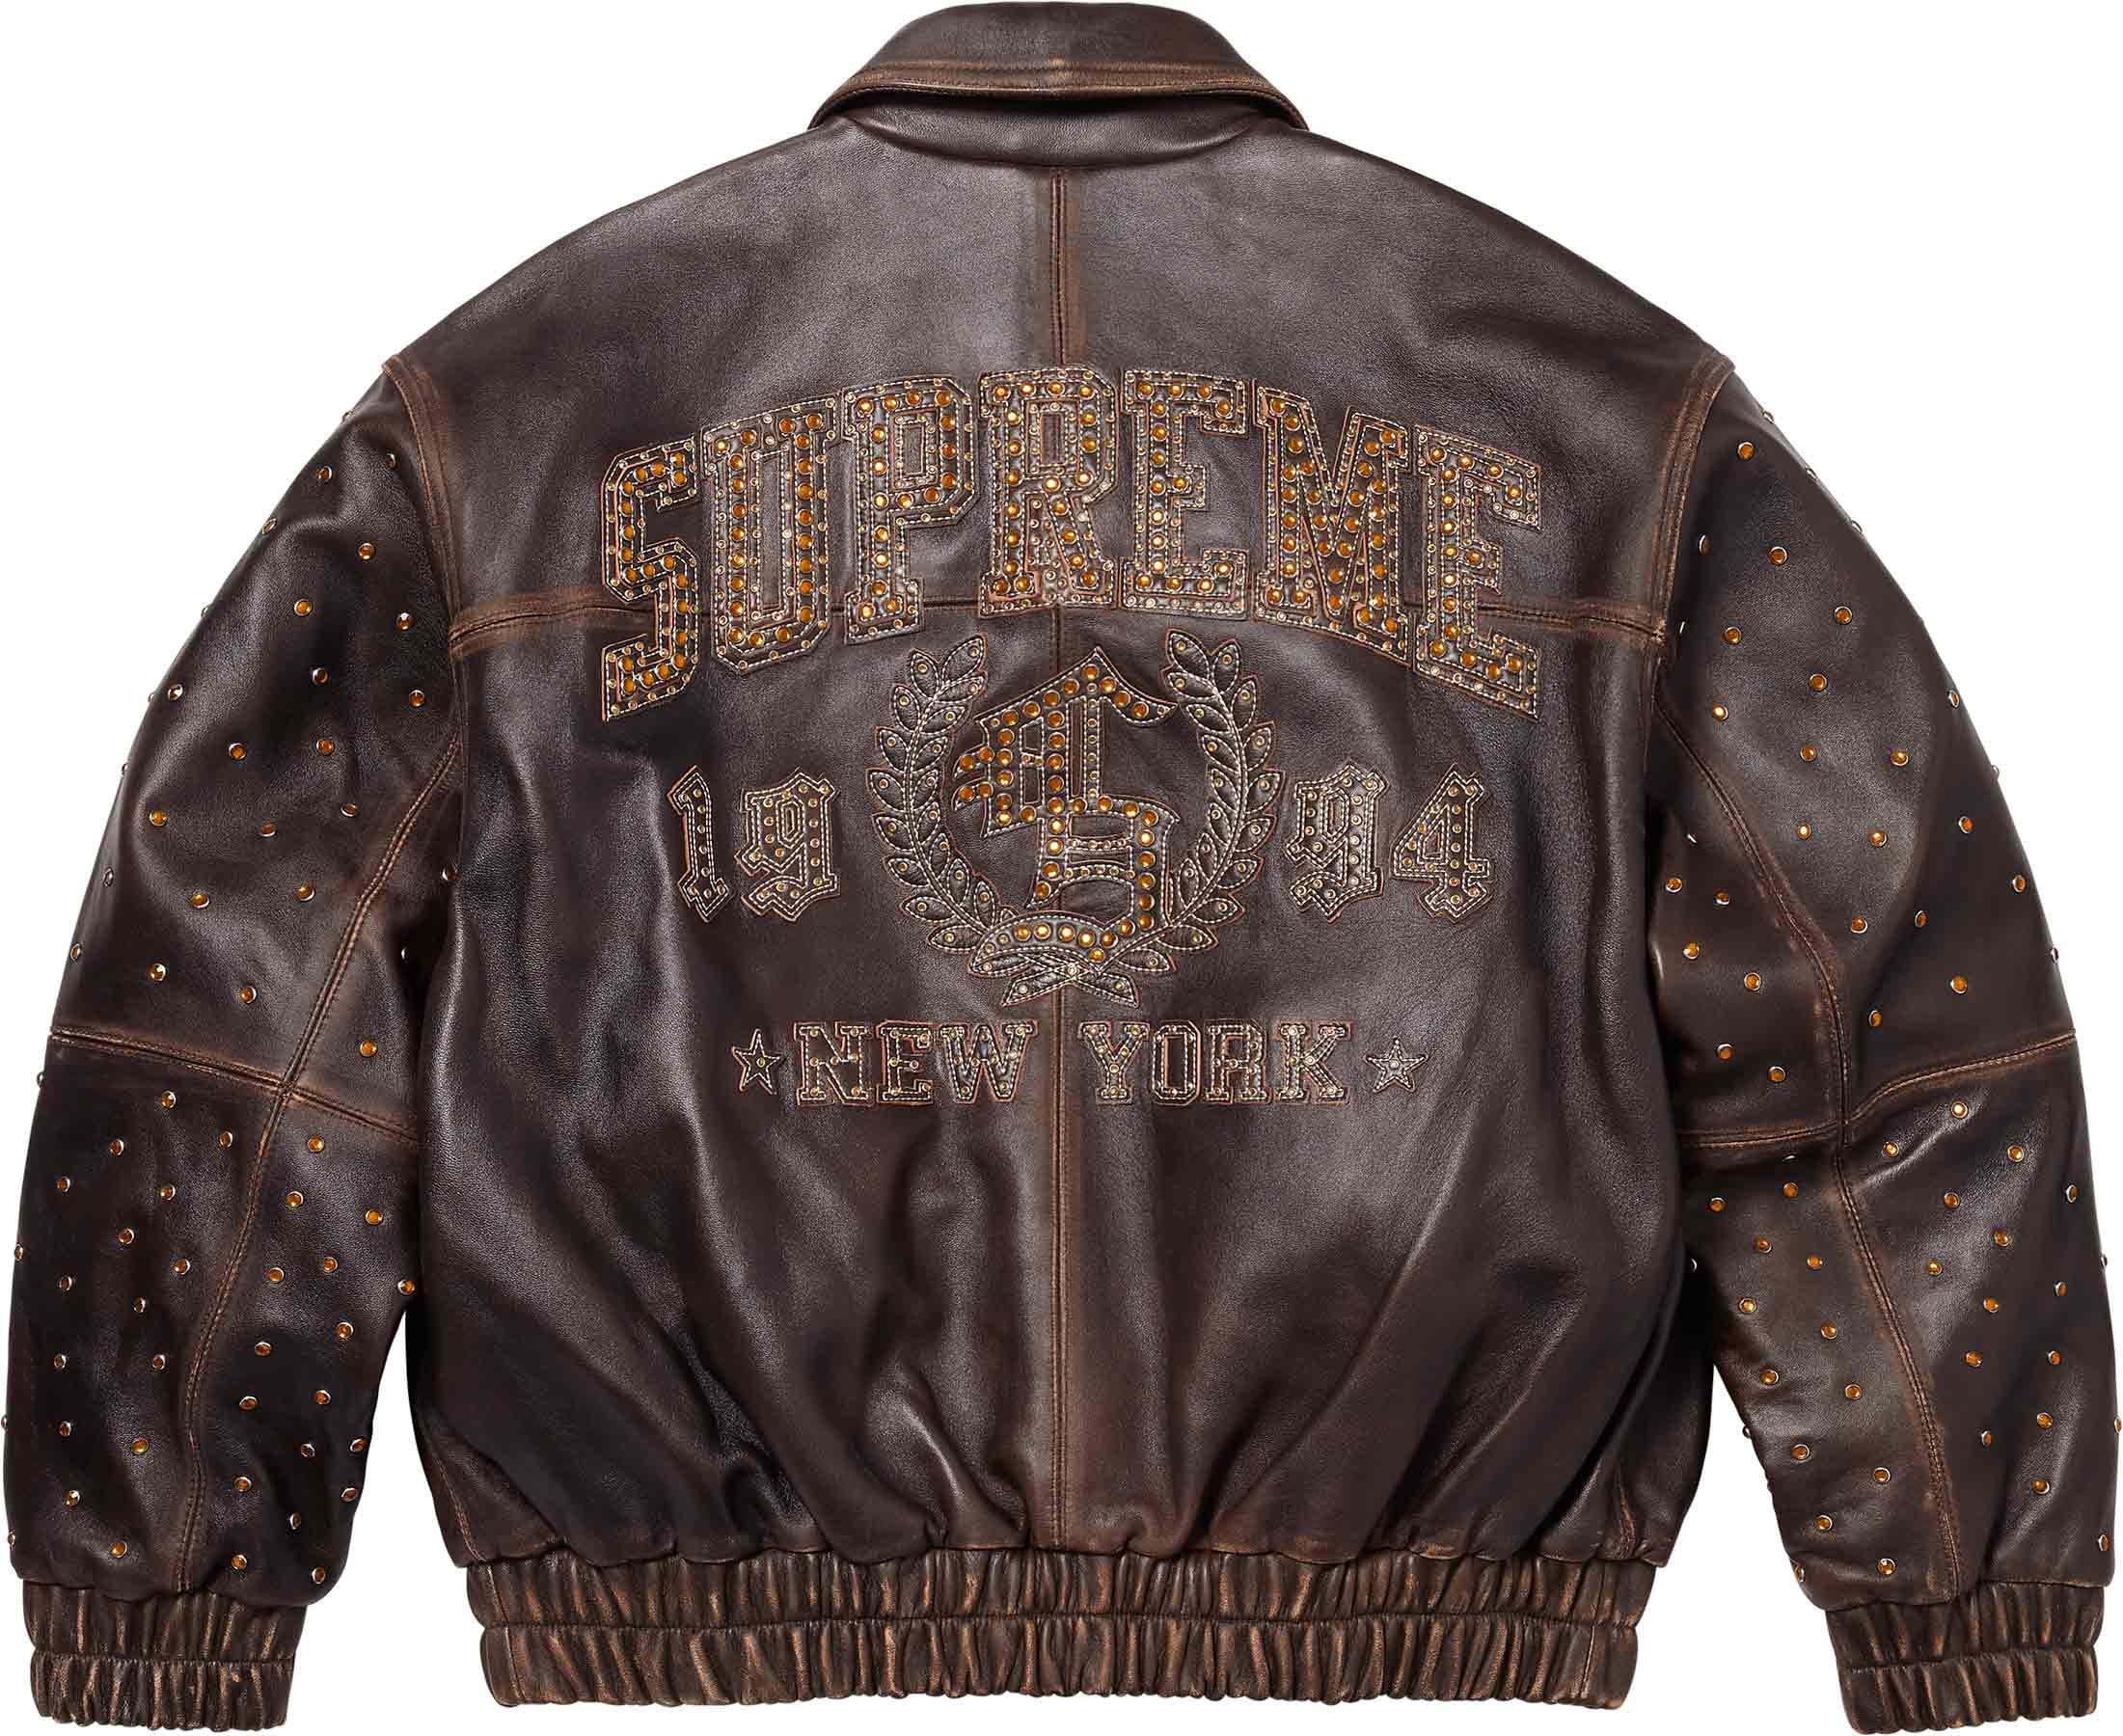 Gem Studded Leather Jacket – Supreme